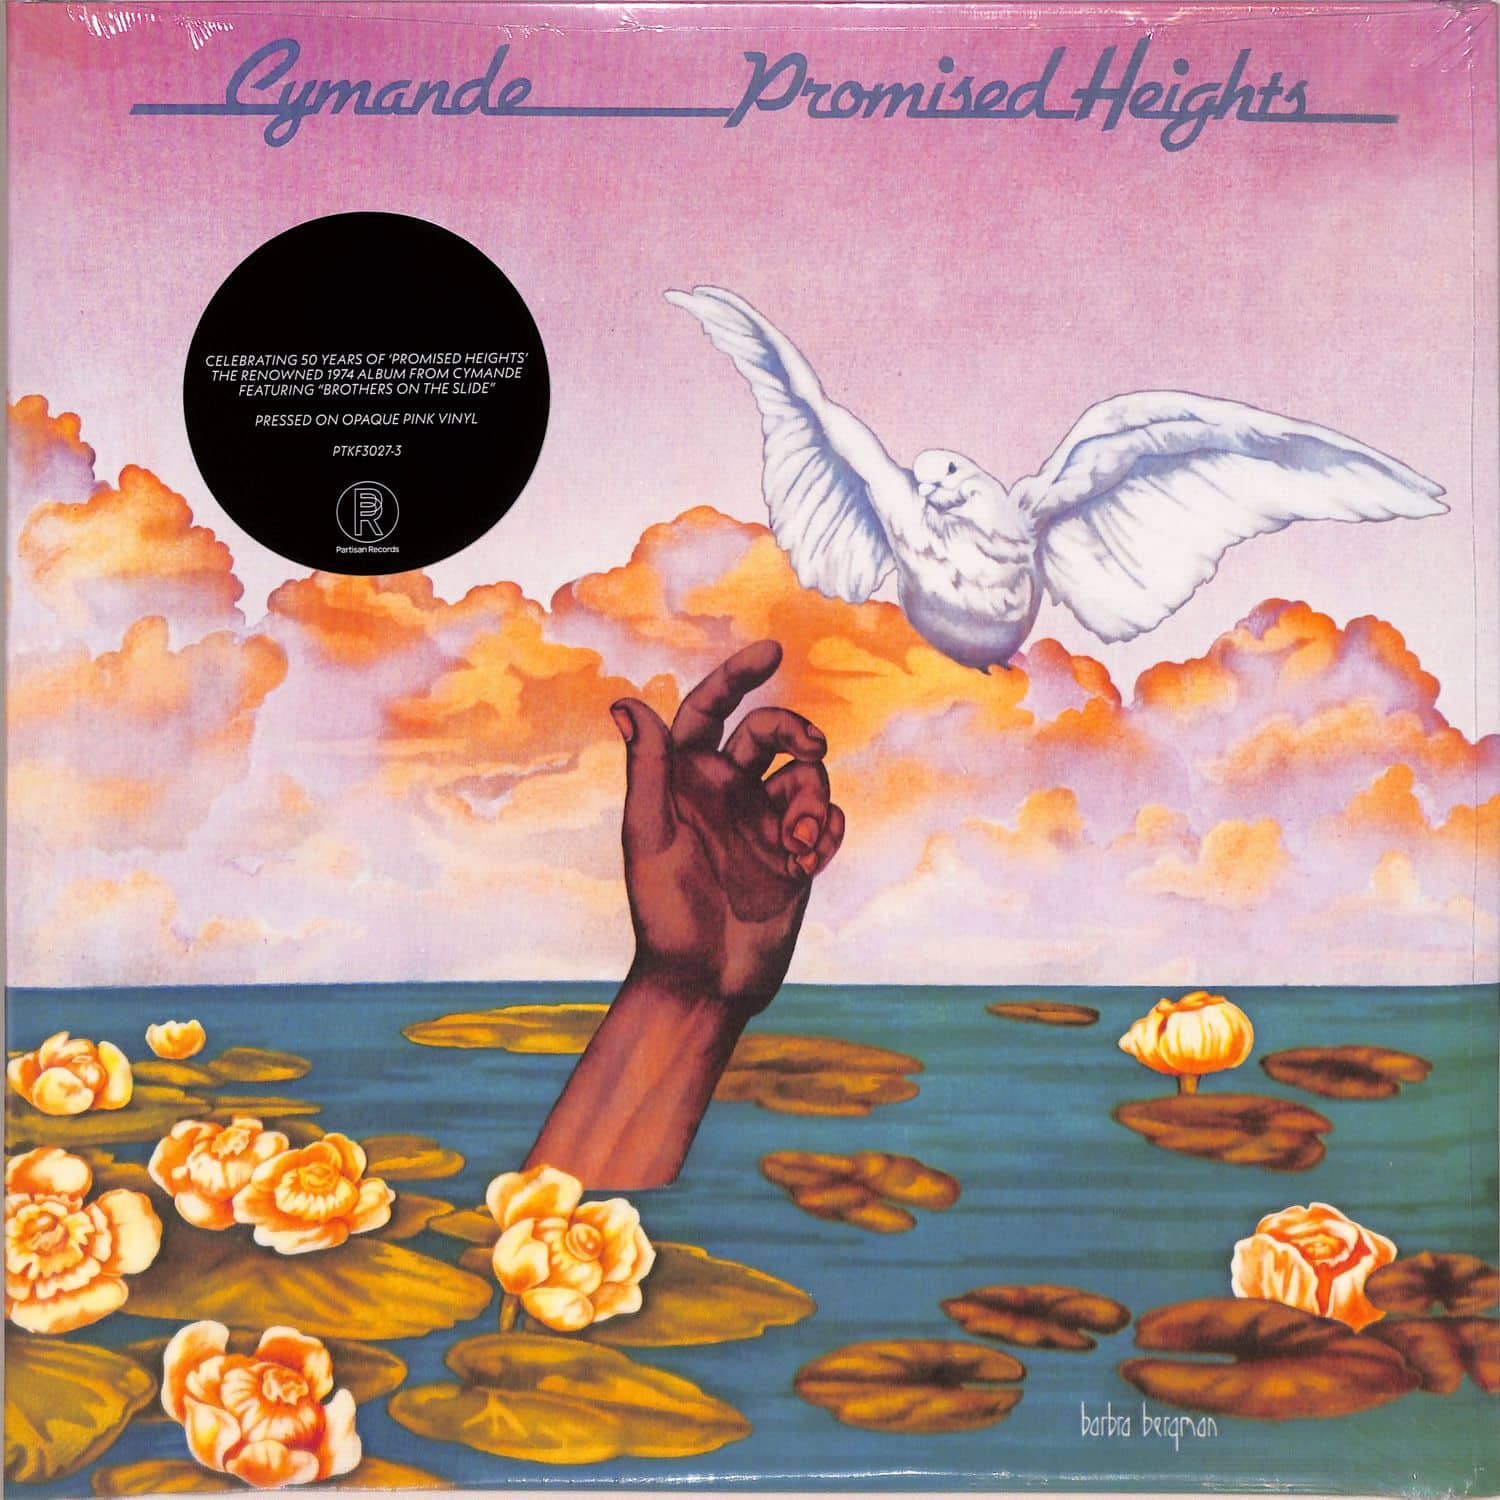 Cymande - PROMISED HEIGHTS 